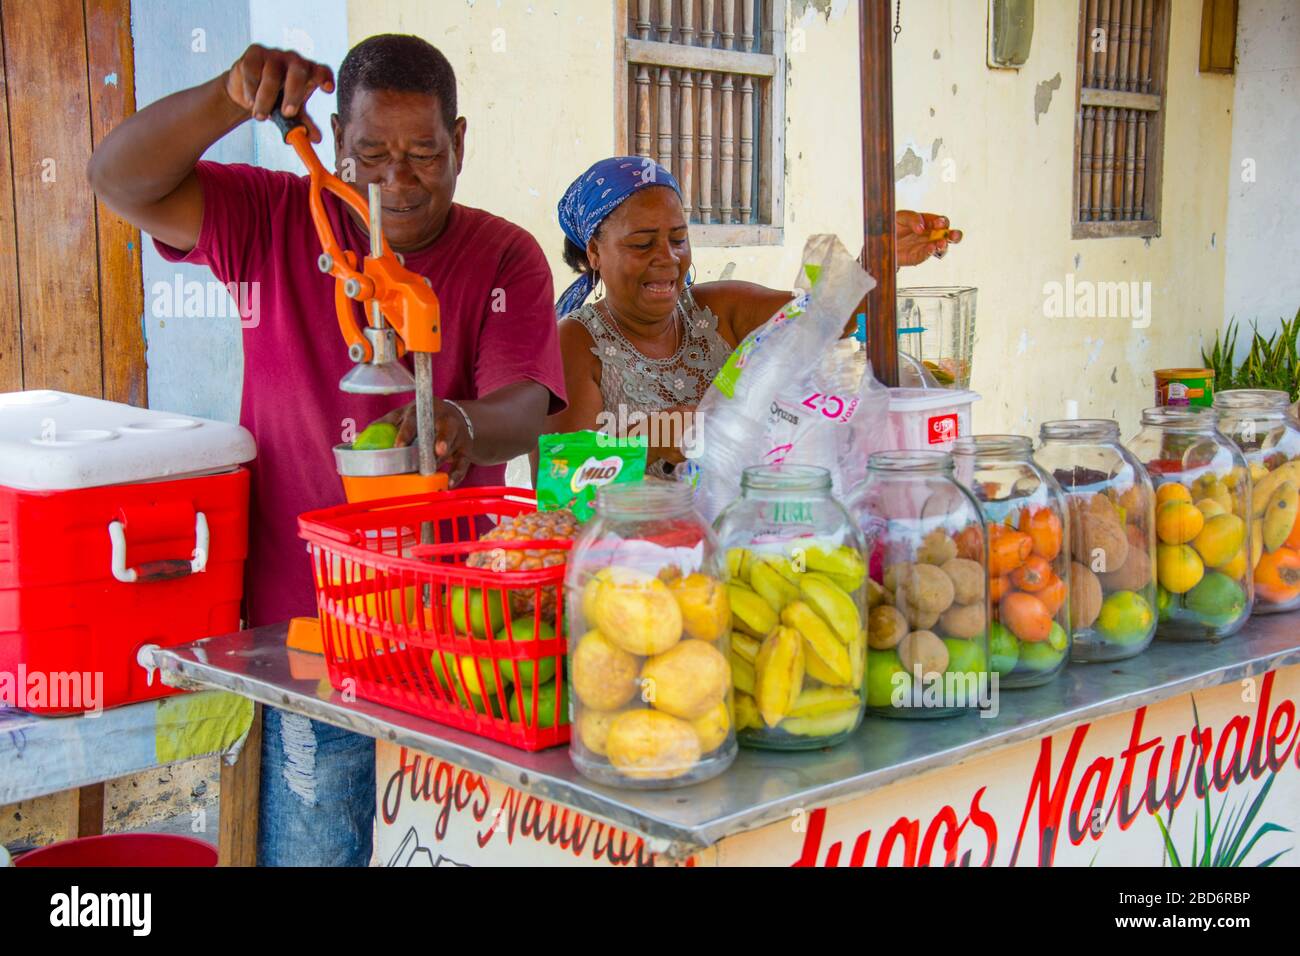 Carthagène, Colombie - 8 mars 2020: Les travailleurs informels vendant de la nourriture dans les rues Banque D'Images